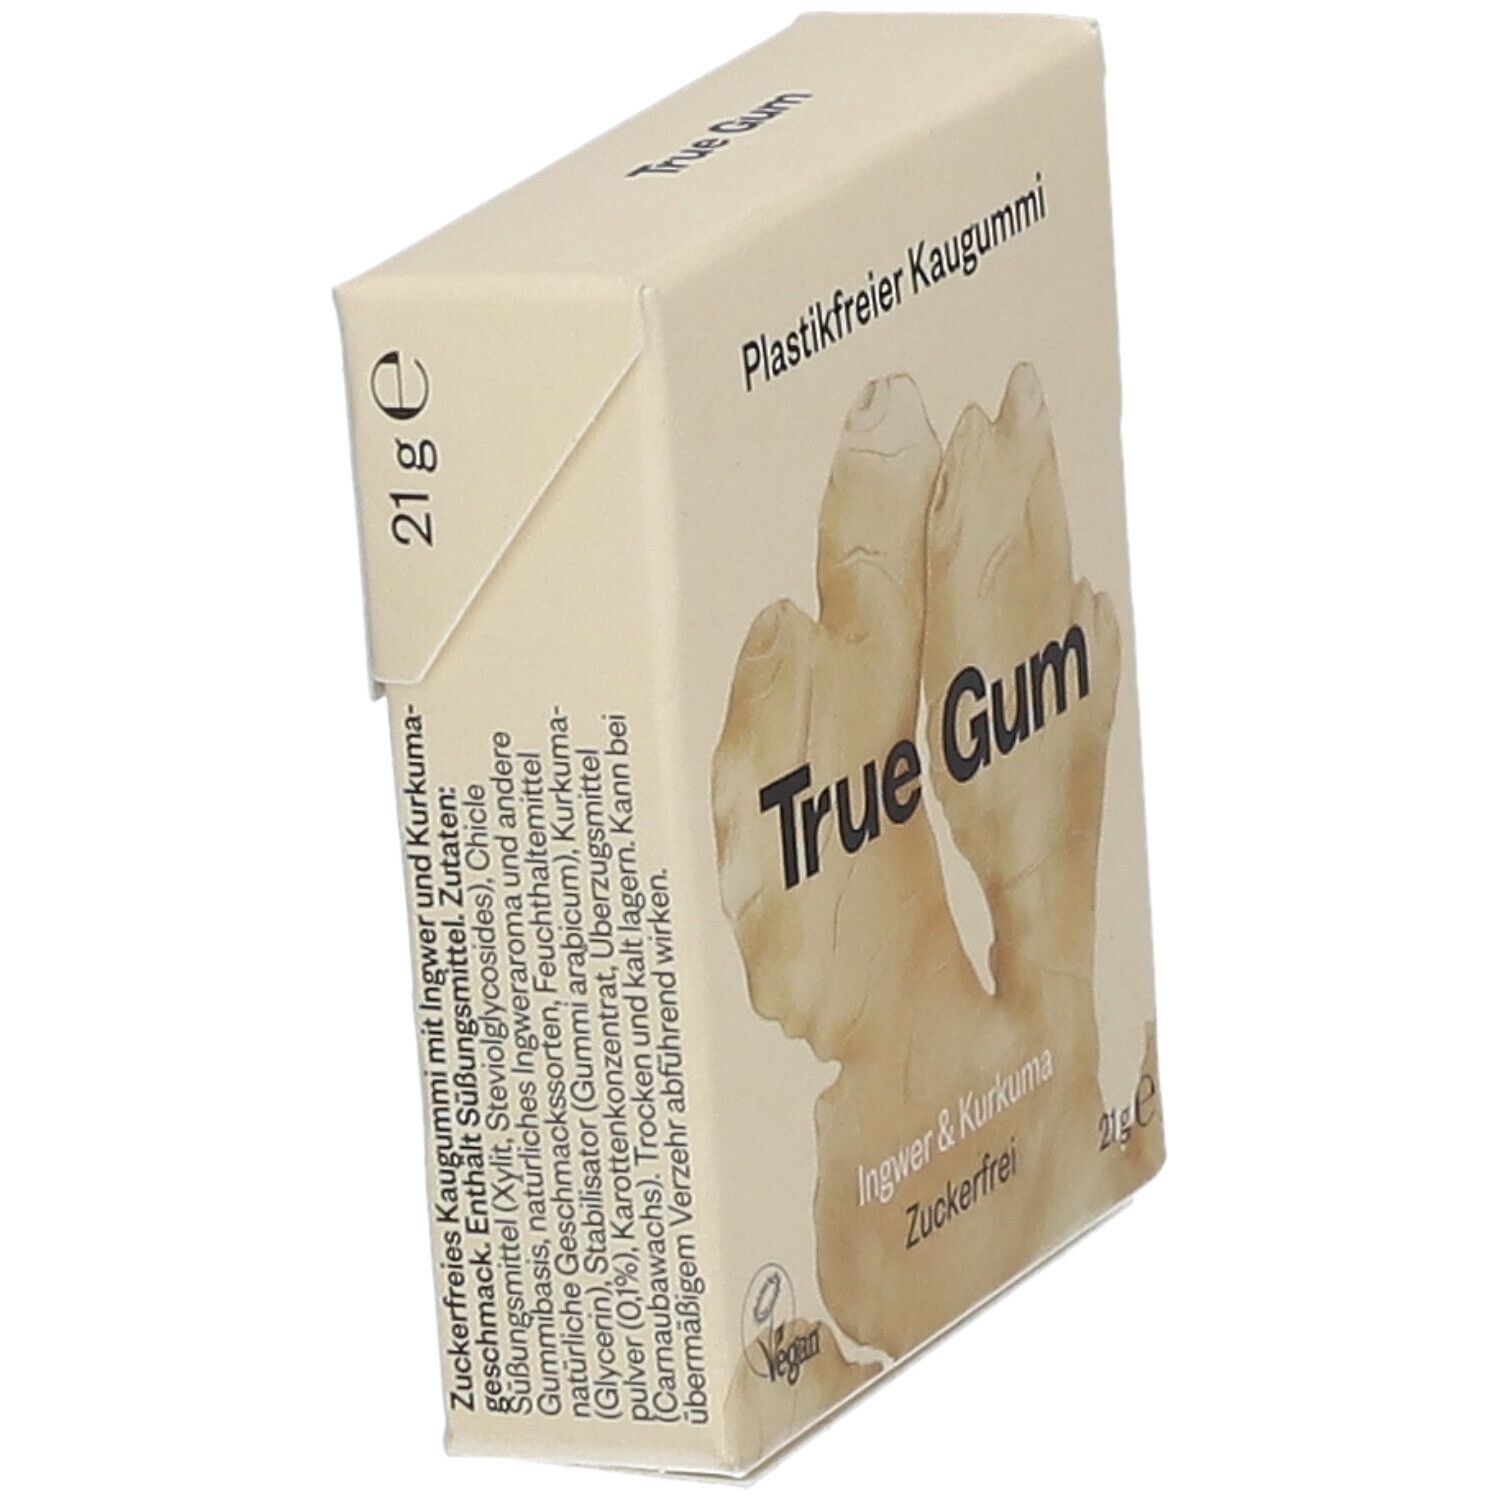 True Gum  Ingwer & Kurkumageschmack